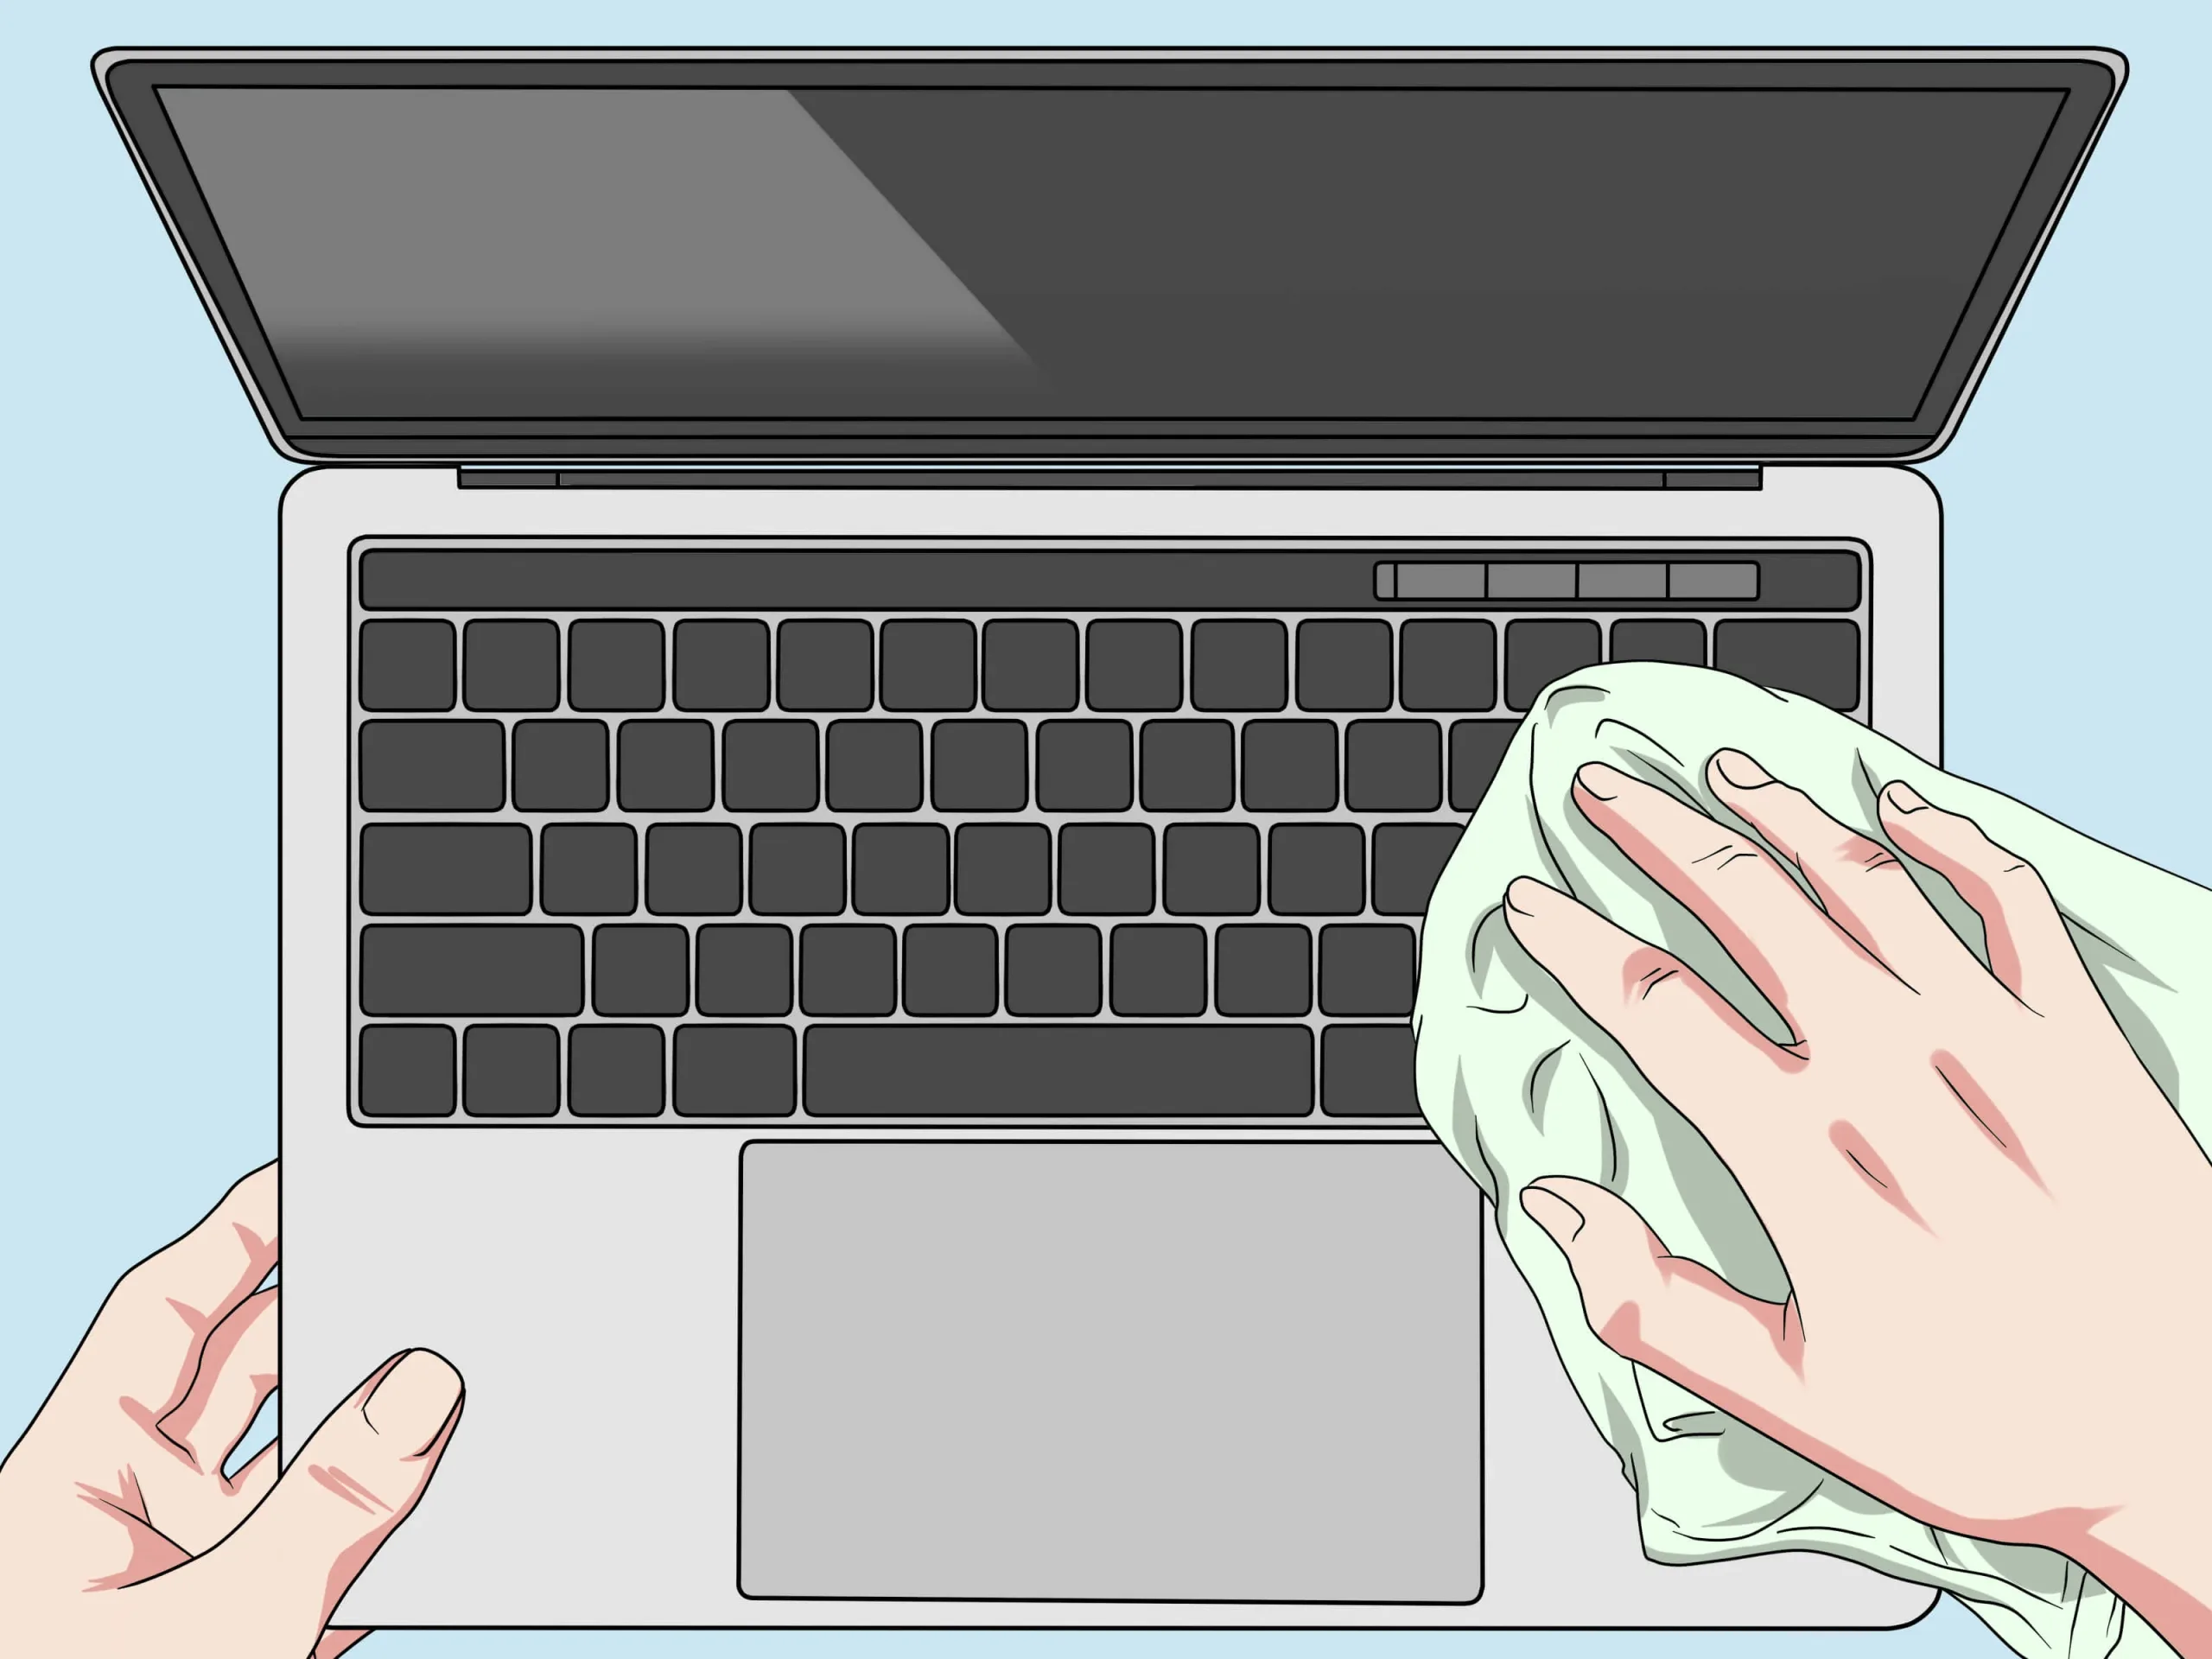 як правильно очистити клавіатуру щоб вона була чиста